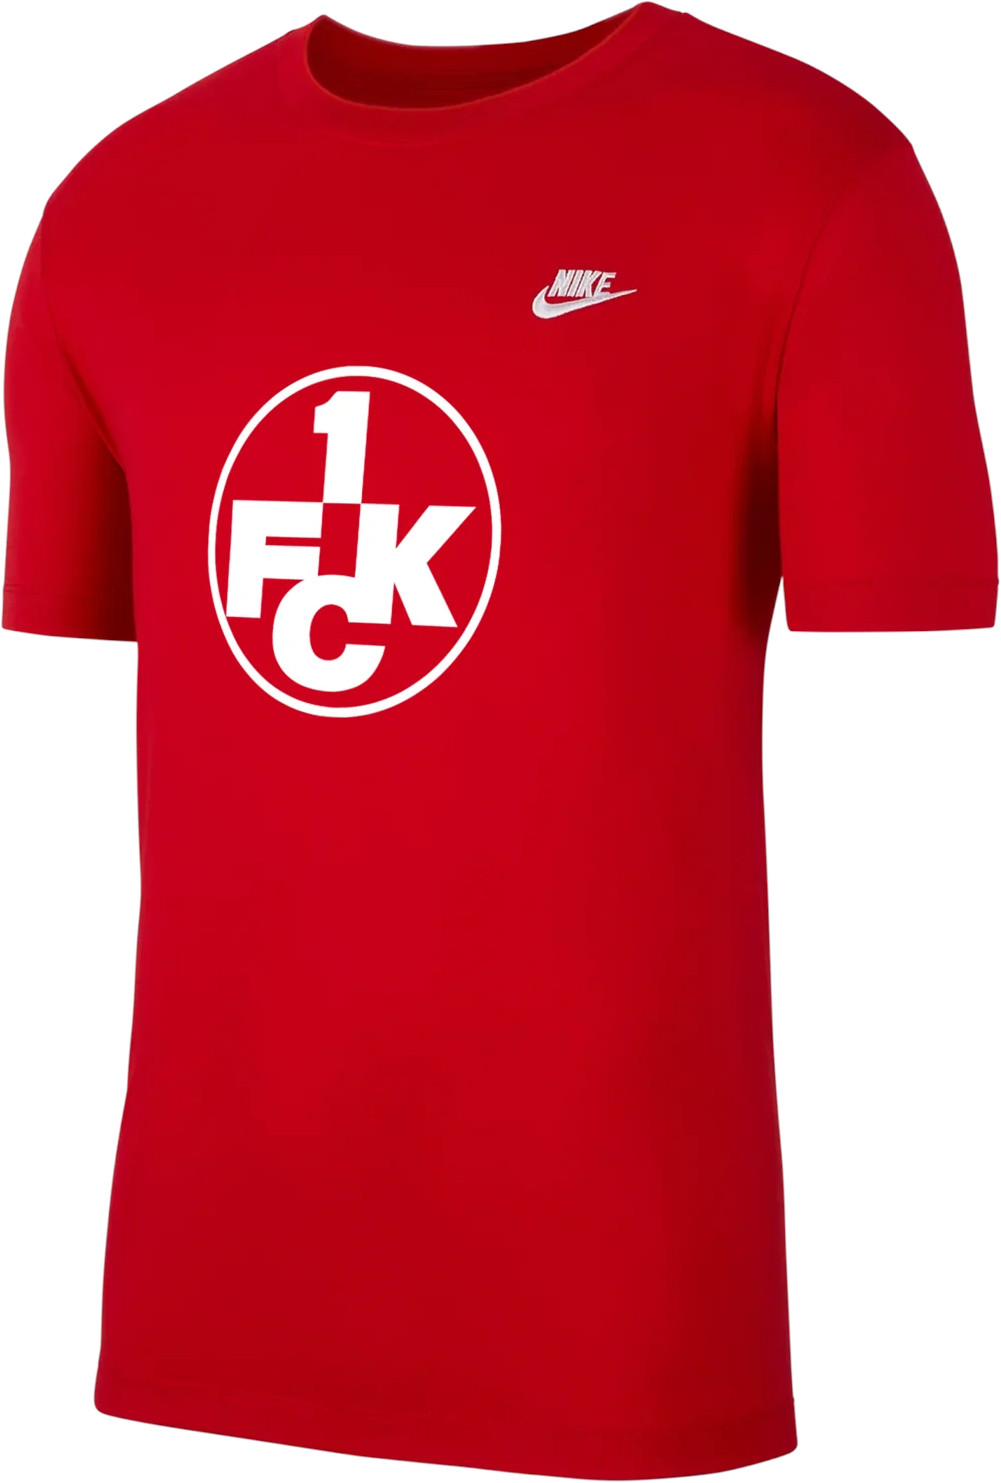 Camiseta Nike 1.FC Kaiserslautern Club Tee